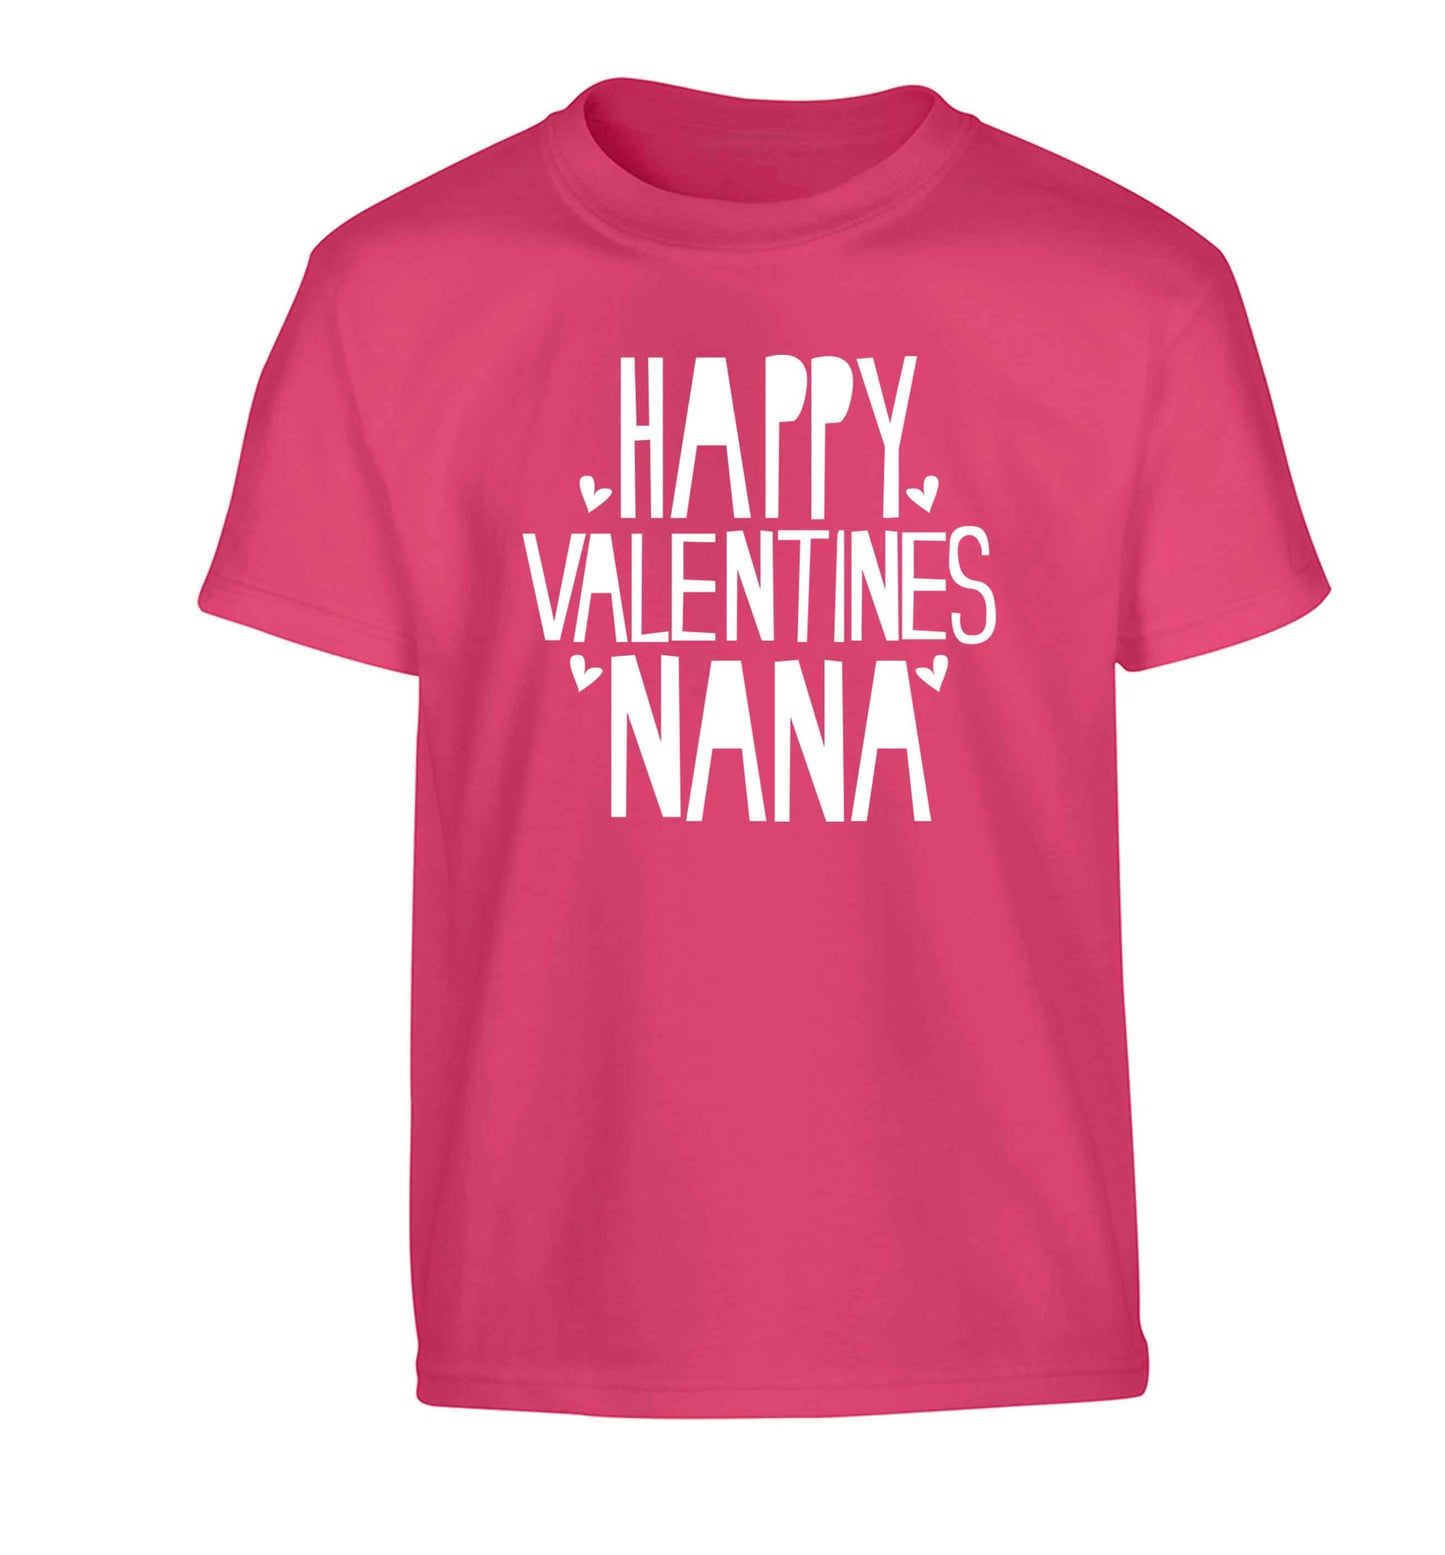 Happy valentines nana Children's pink Tshirt 12-13 Years